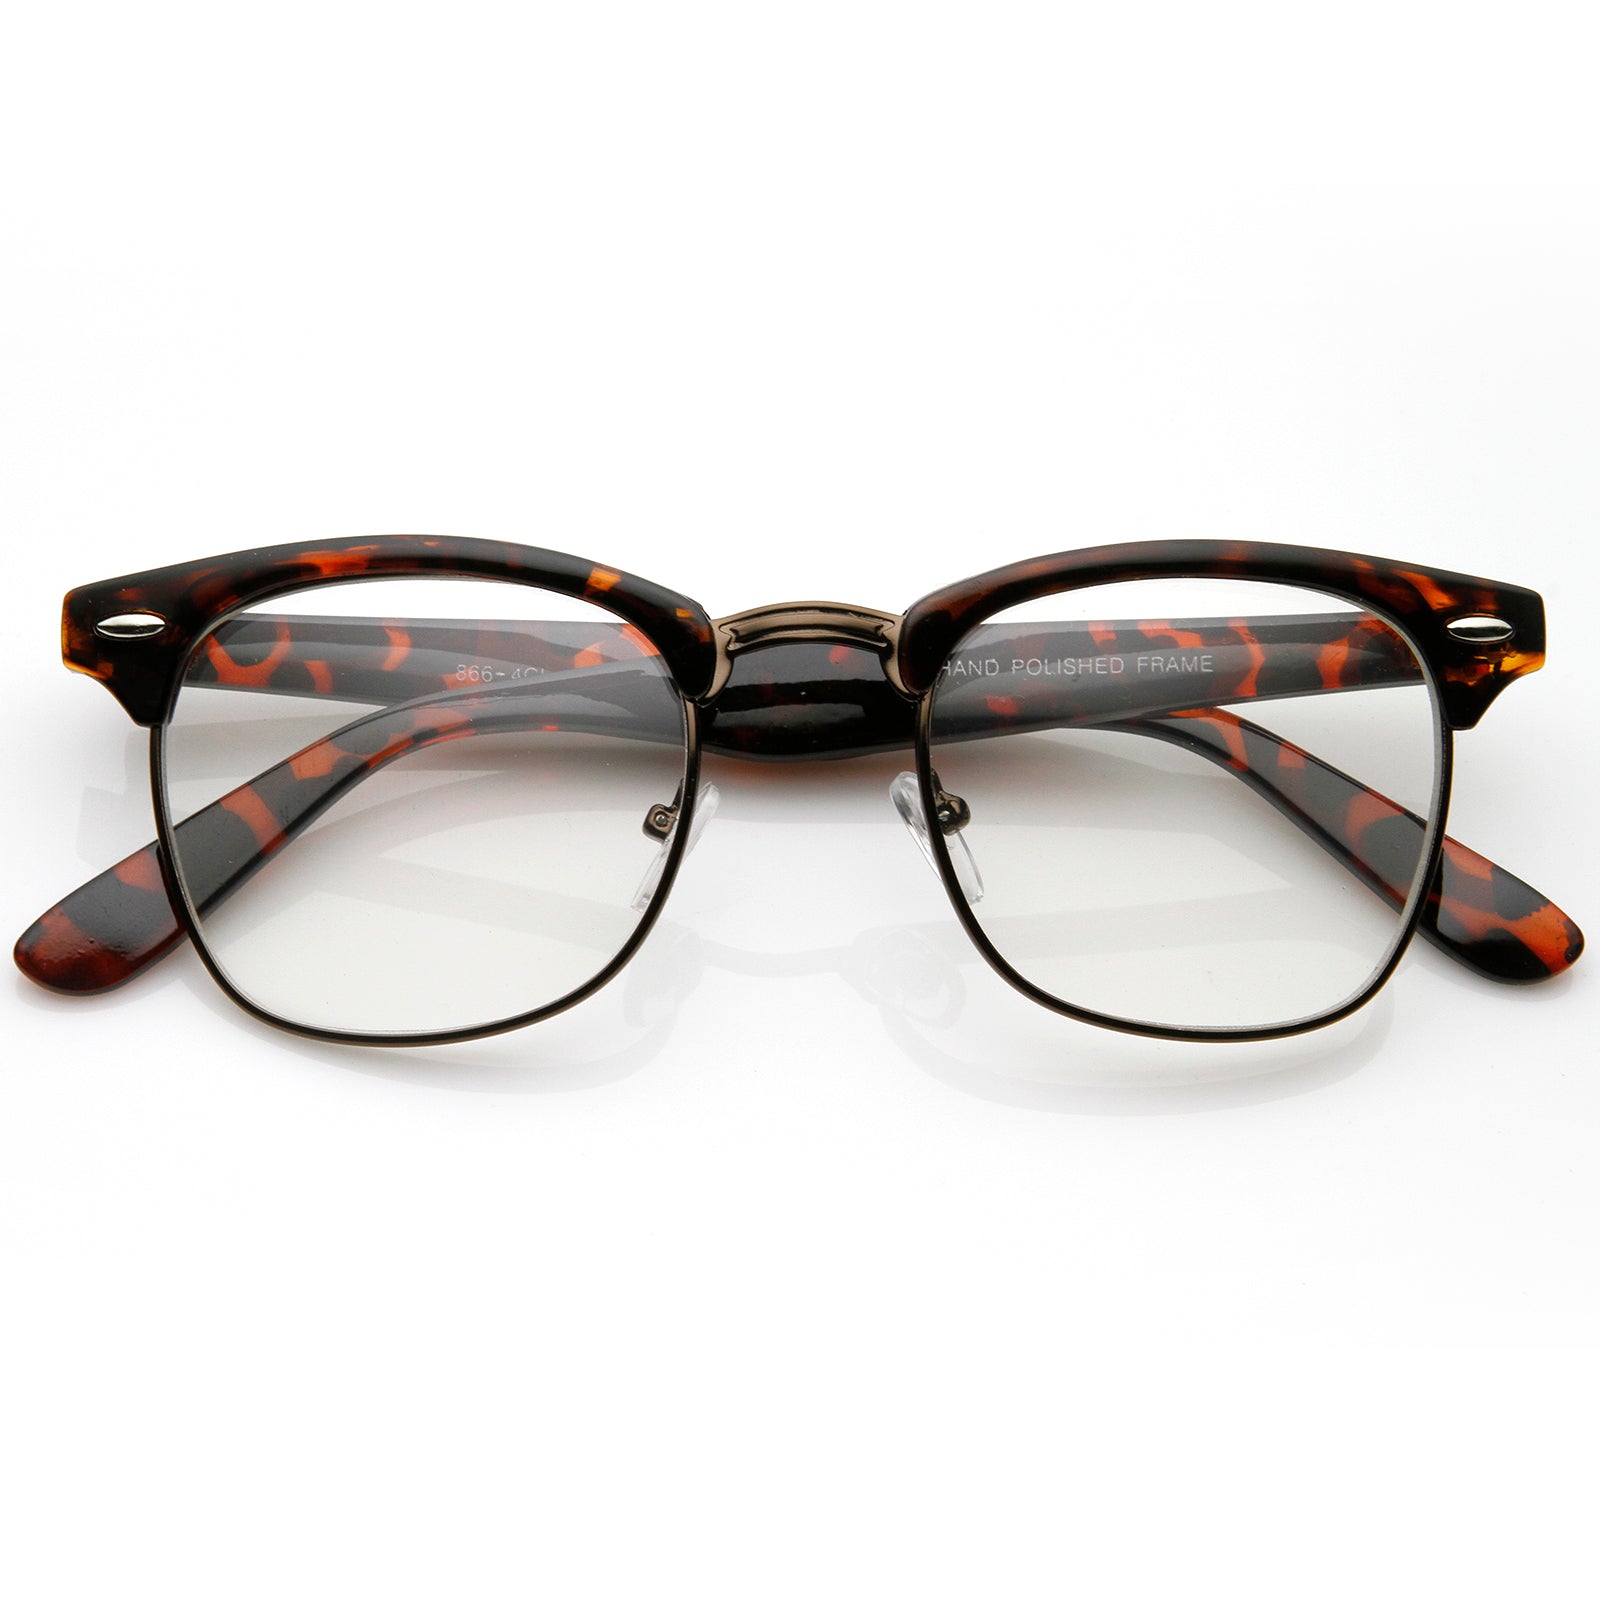 Finds 🤍 Elegant glasses under 30$